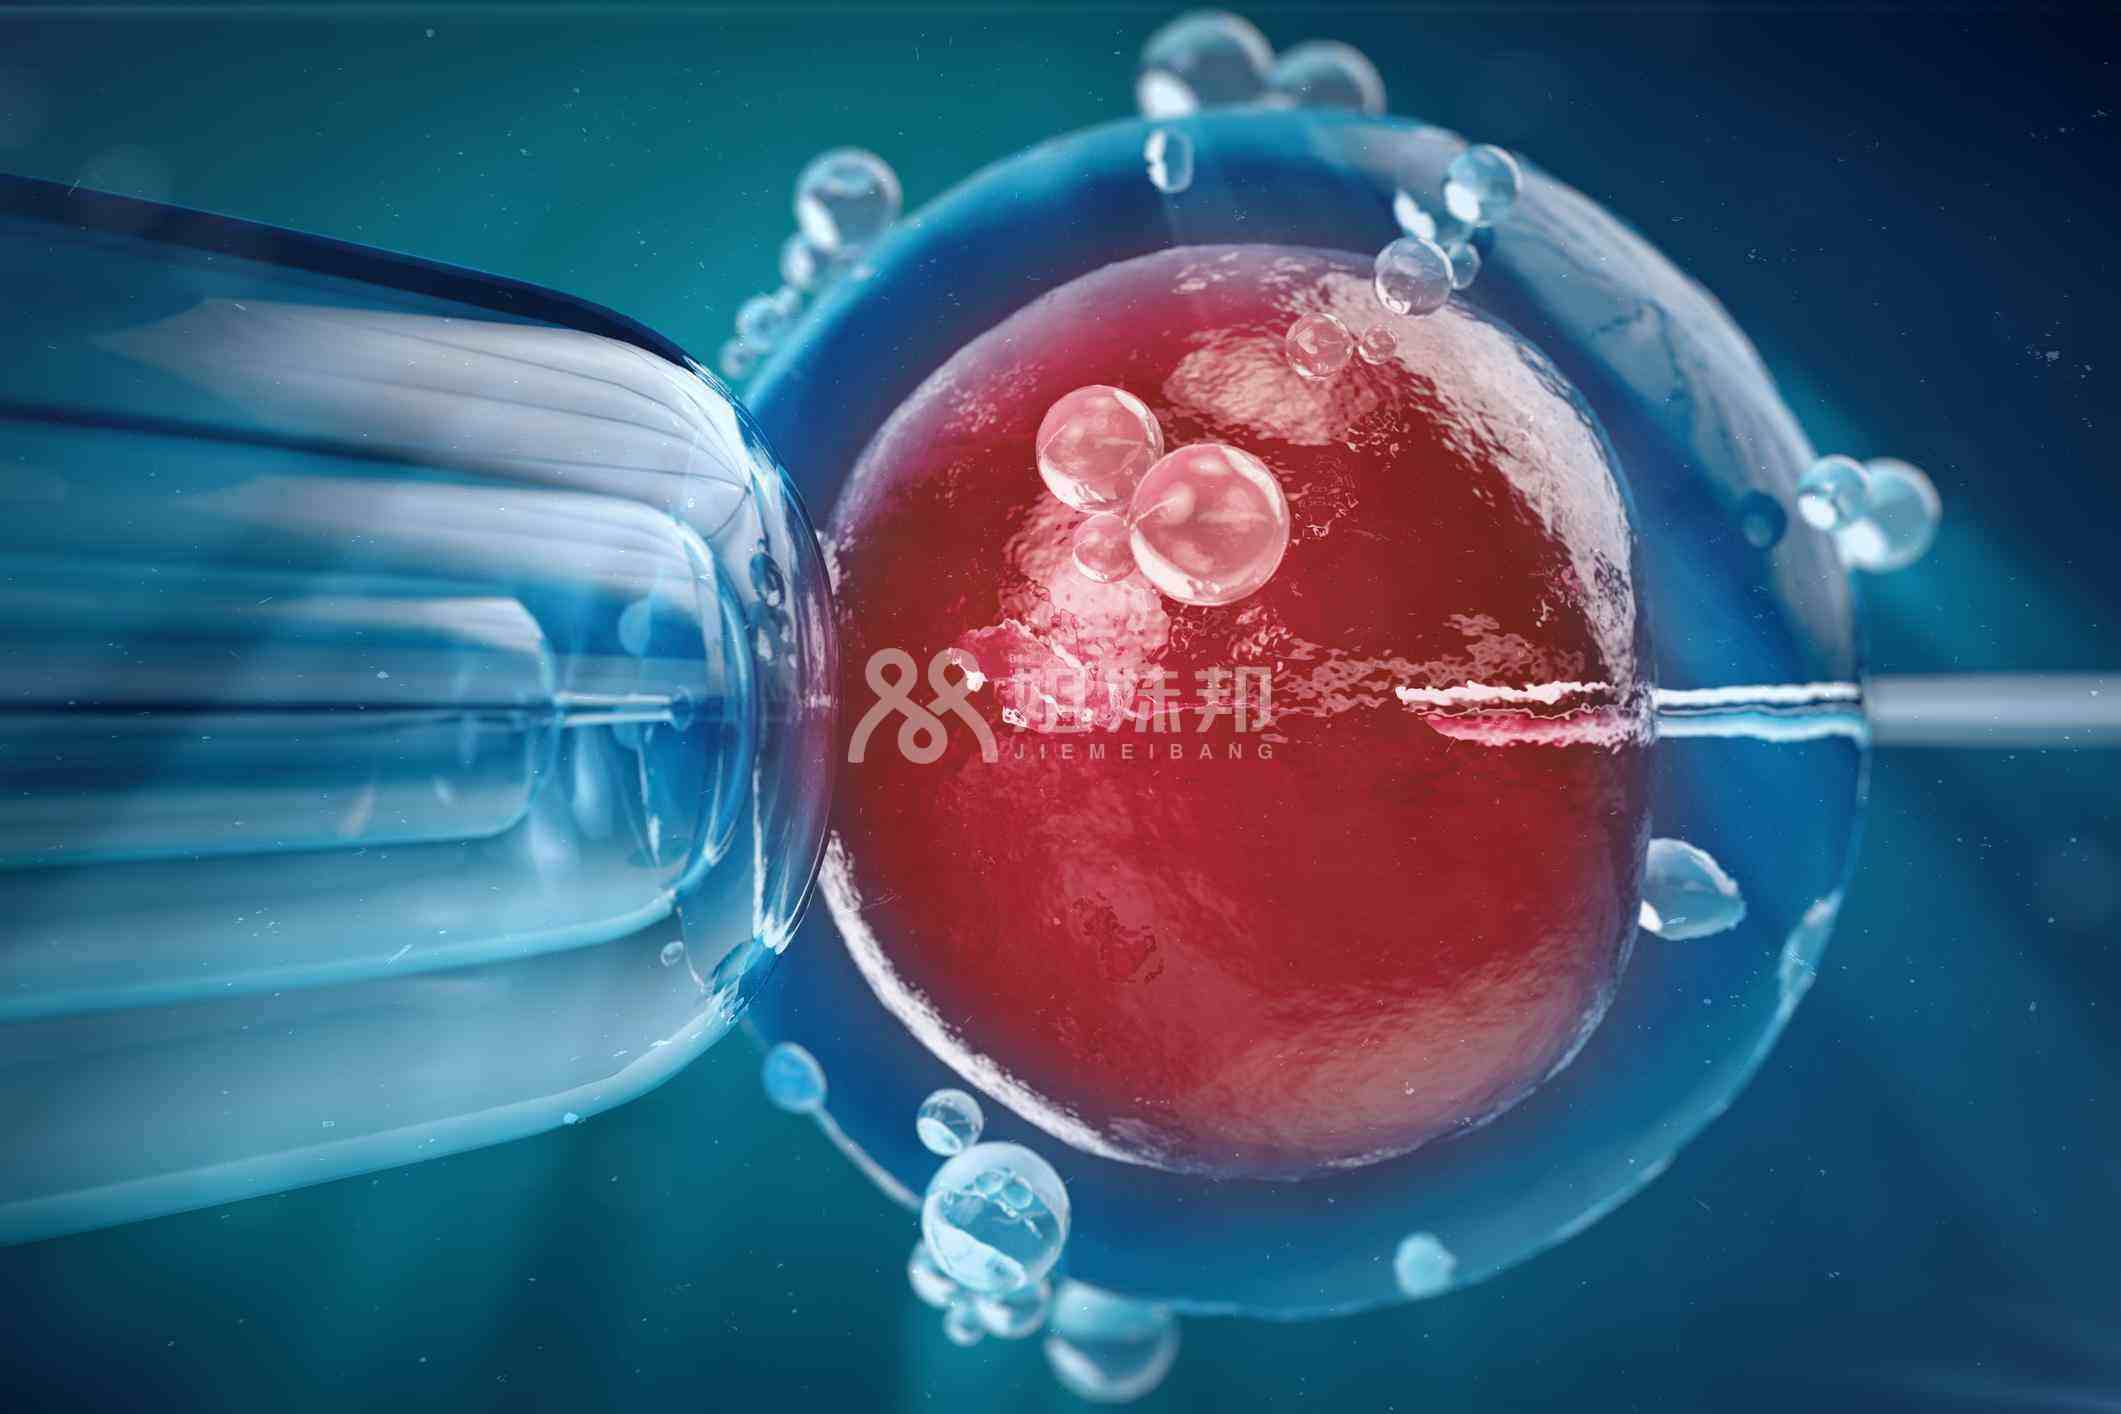 囊胚移植可能会增加单卵双胎风险